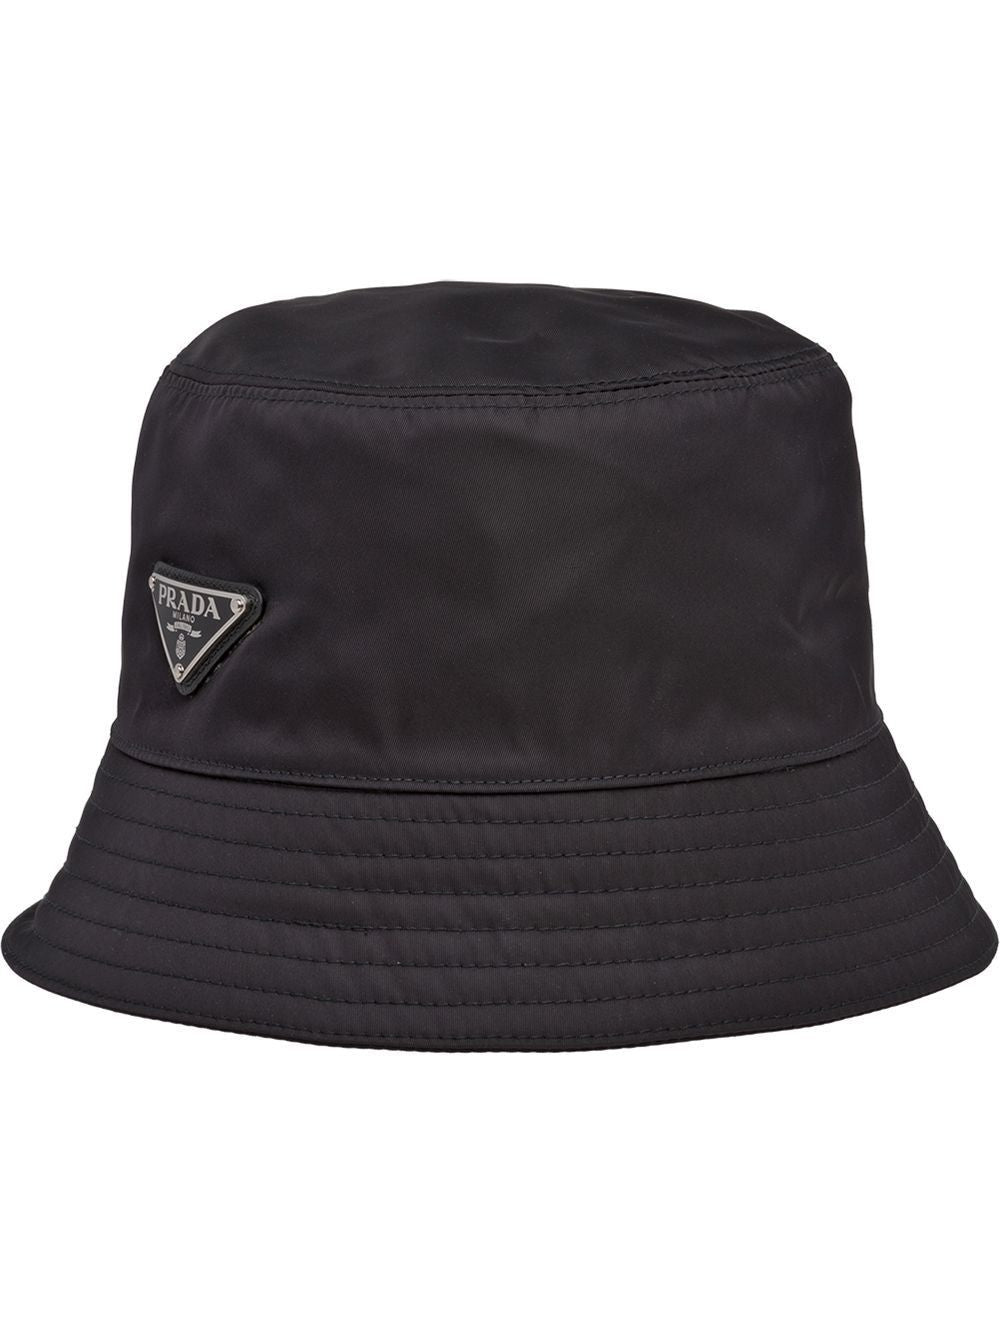 قبعة طوق سوداء أنيقة للرجال - قماش مستدام لفصل الصيف 24